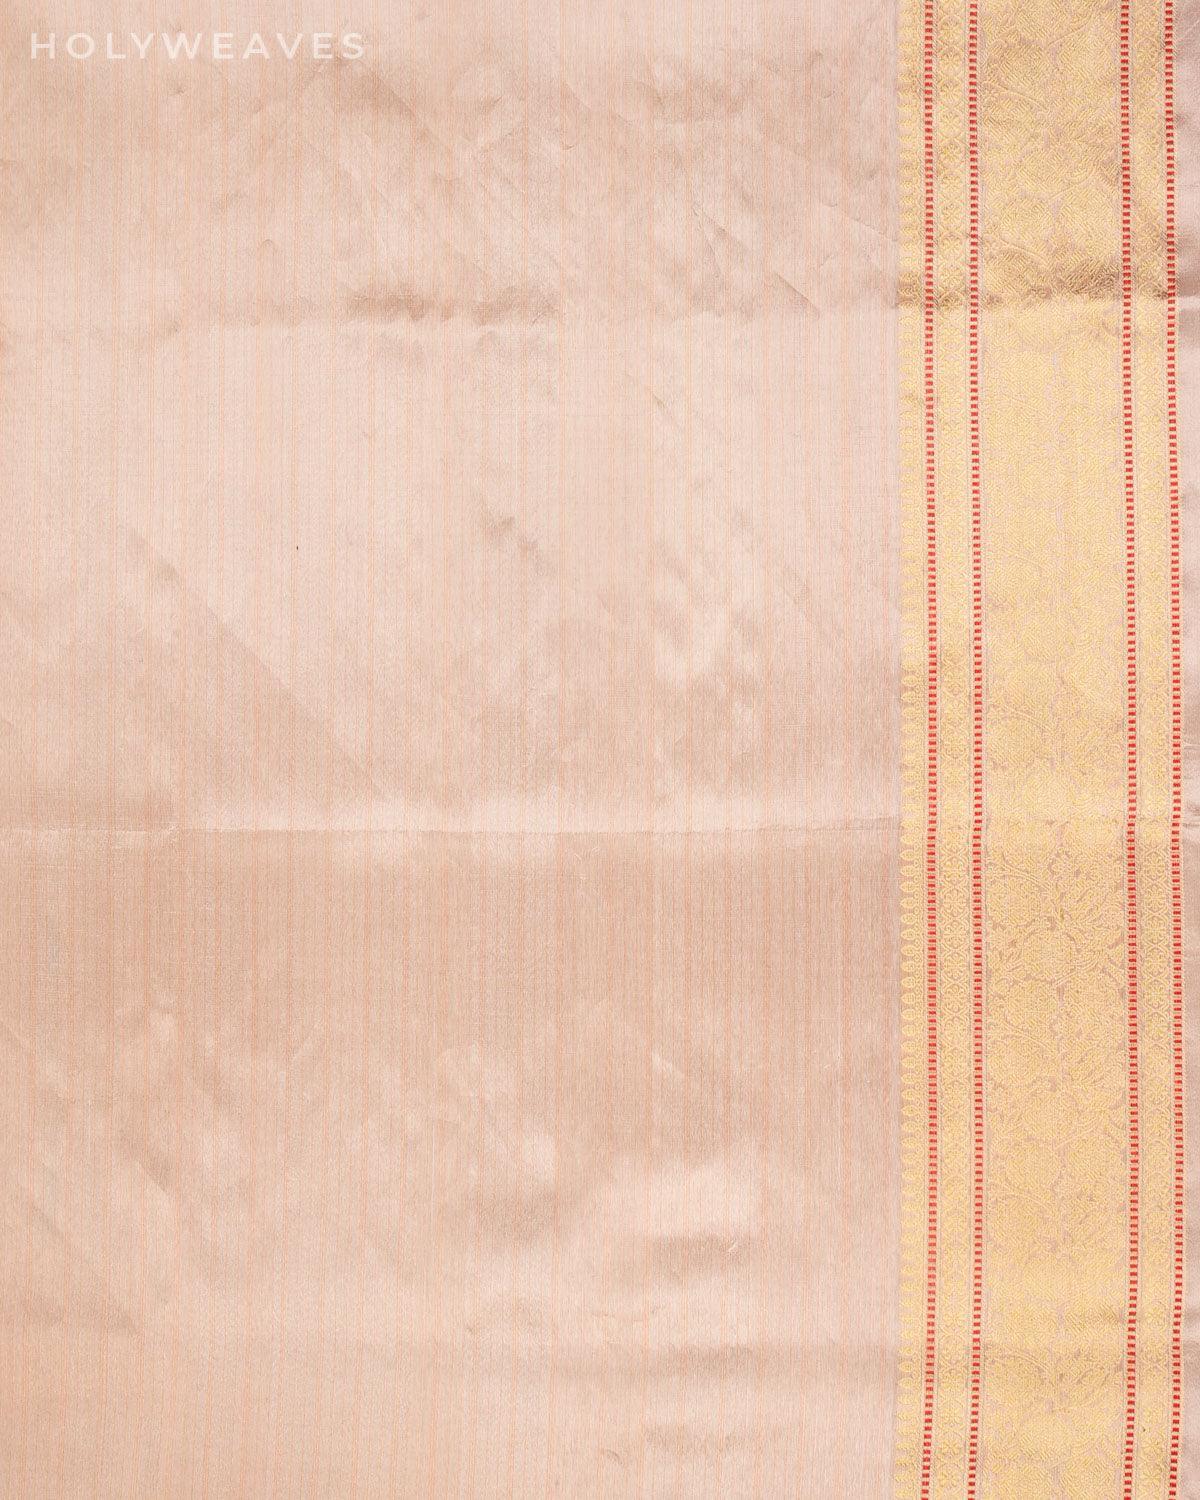 Misty Rose Pink Banarasi "STAR" Cutwork Brocade Handwoven Kora Tissue Saree - By HolyWeaves, Benares